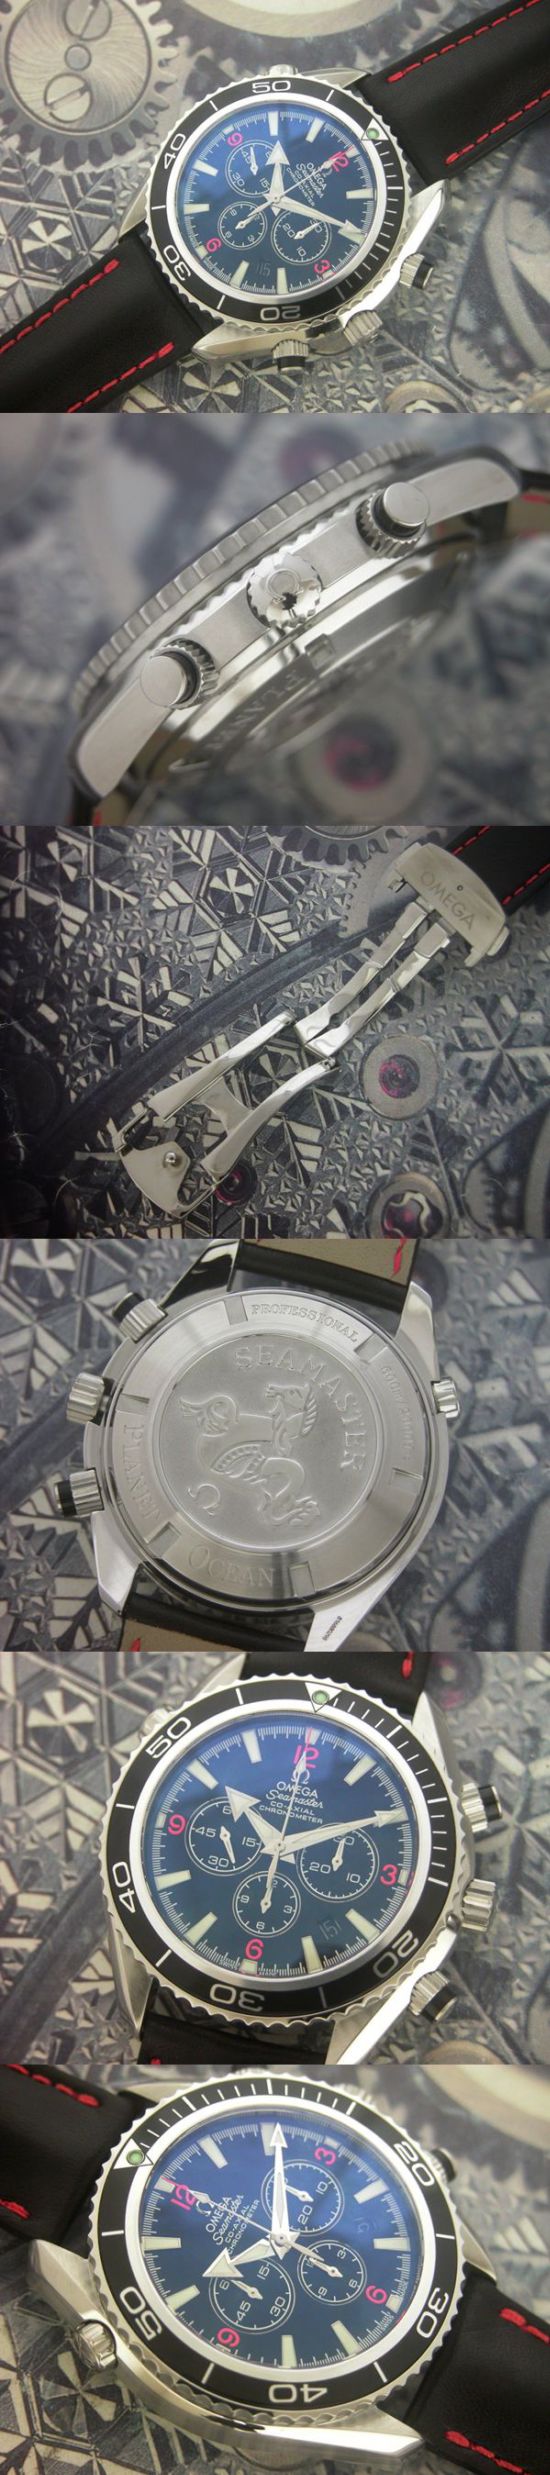 おしゃれなブランド時計がオメガ-シーマスター-OMEGA-2910.51.82-男性用を提供します.